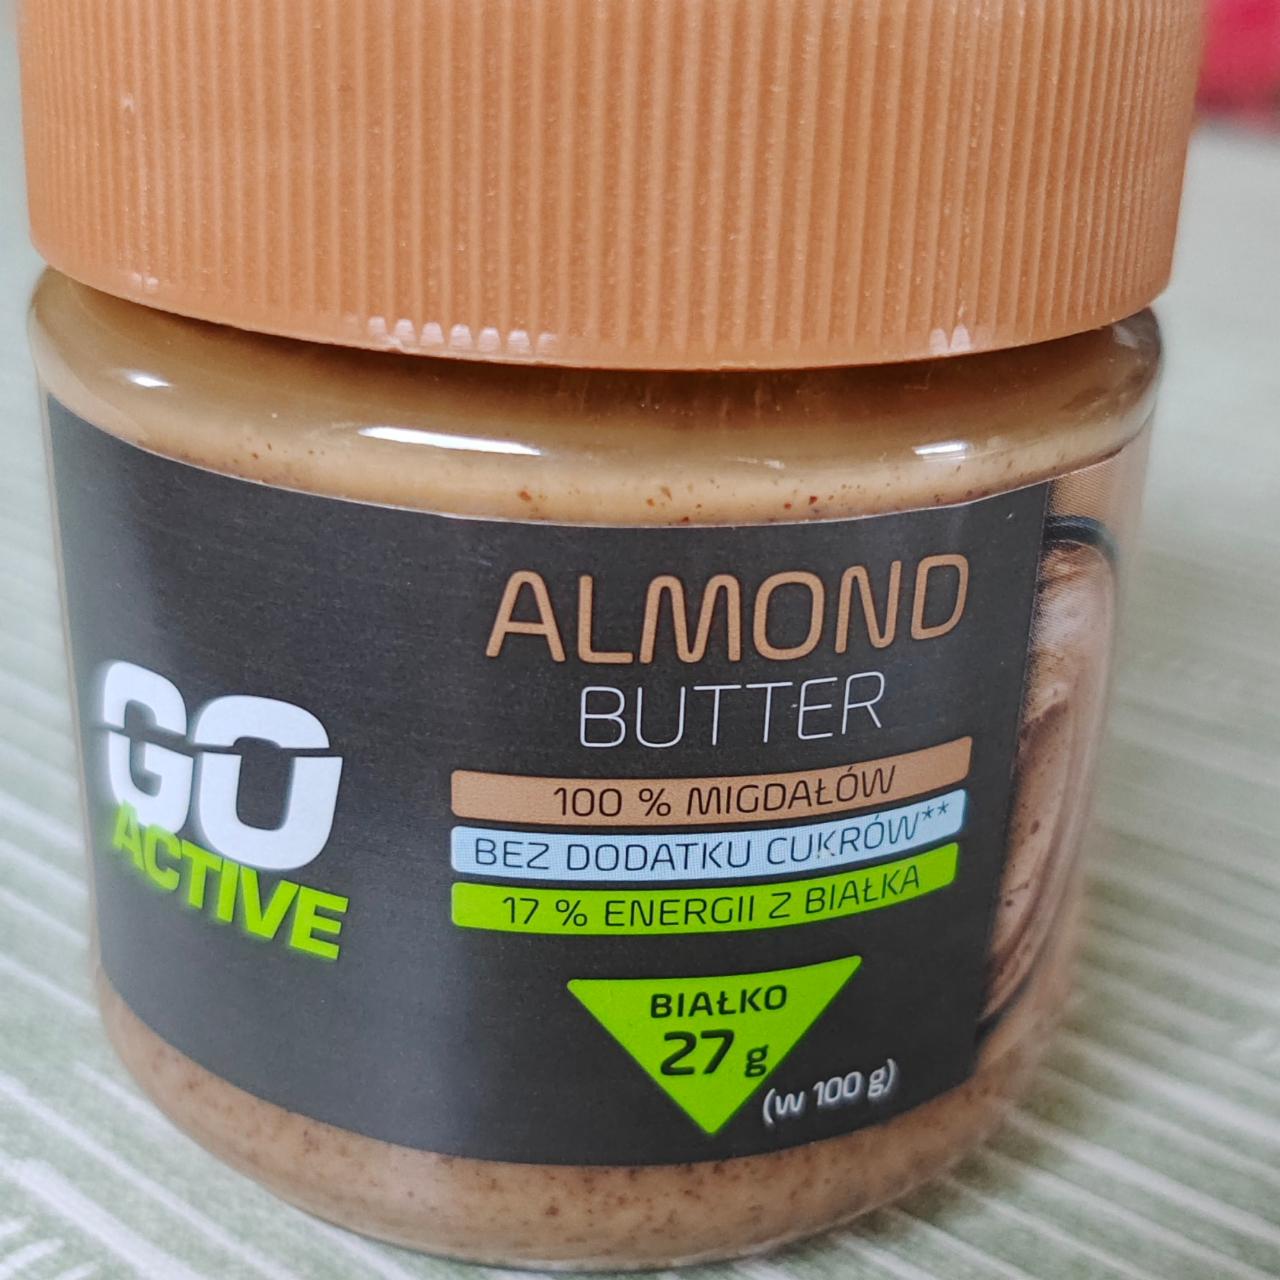 Zdjęcia - Almond butter Go Active